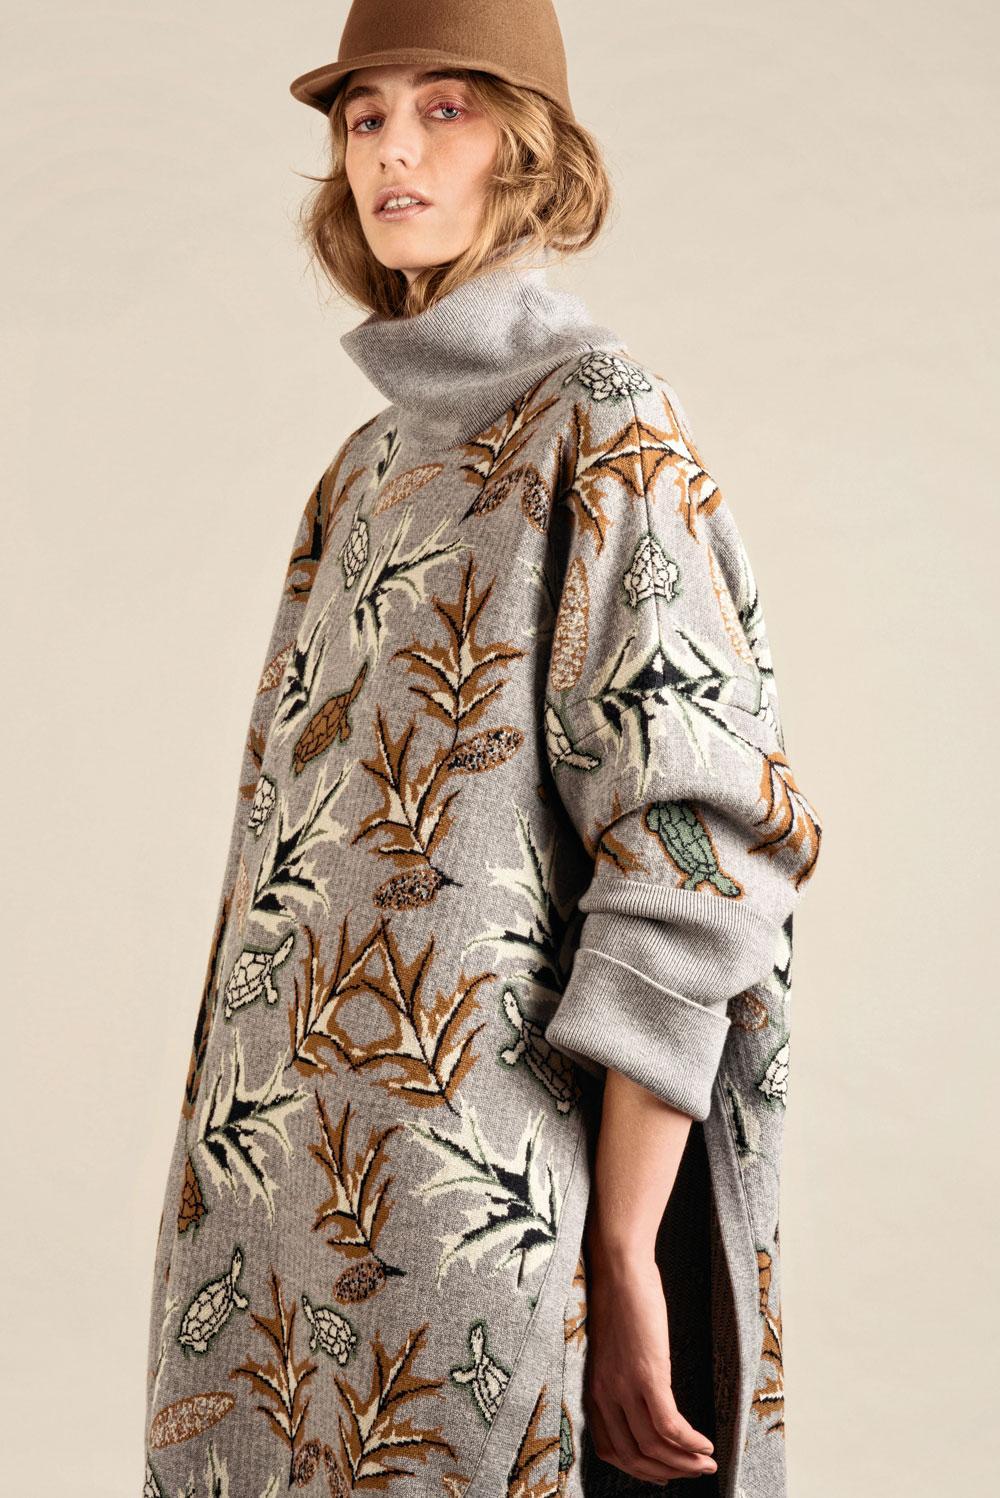 Rechte jurk en bijbehorende poncho van grijs tricot met herfstmotief, Lacoste. Pet, A.P.C.